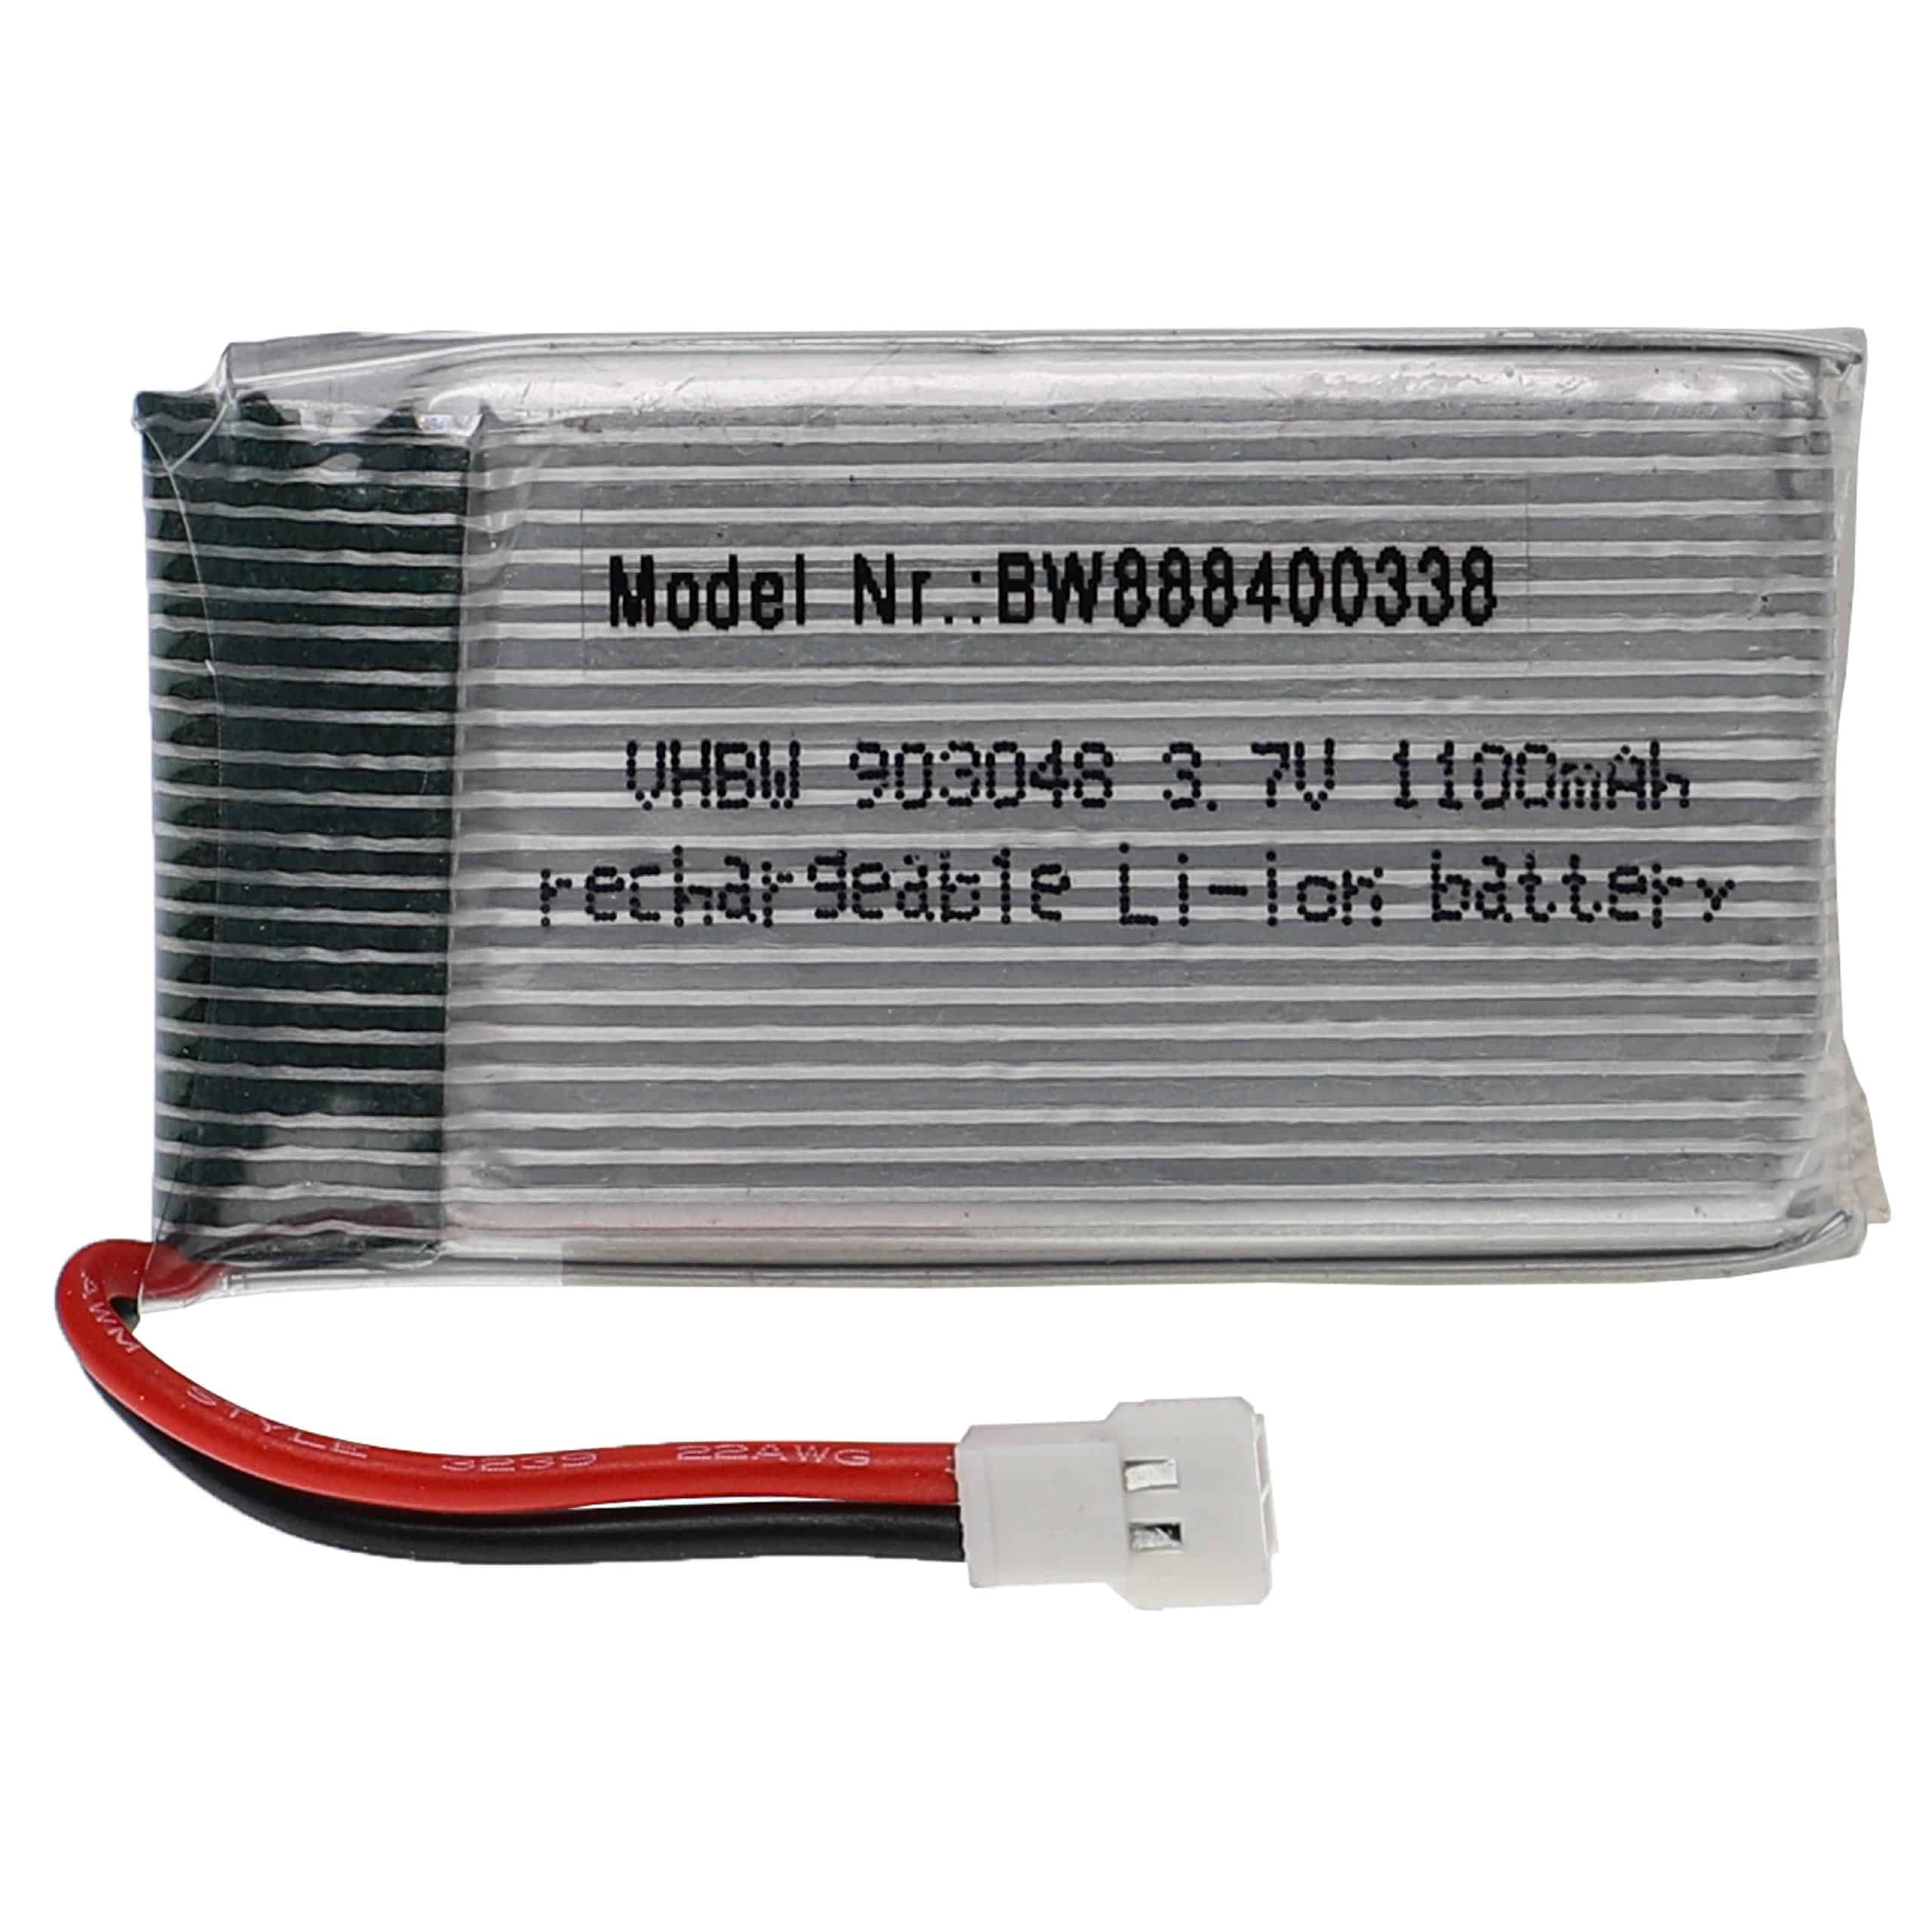 Batería para dispositivos modelismo - 1100 mAh 3,7 V Li-poli, XH 2.54 2P